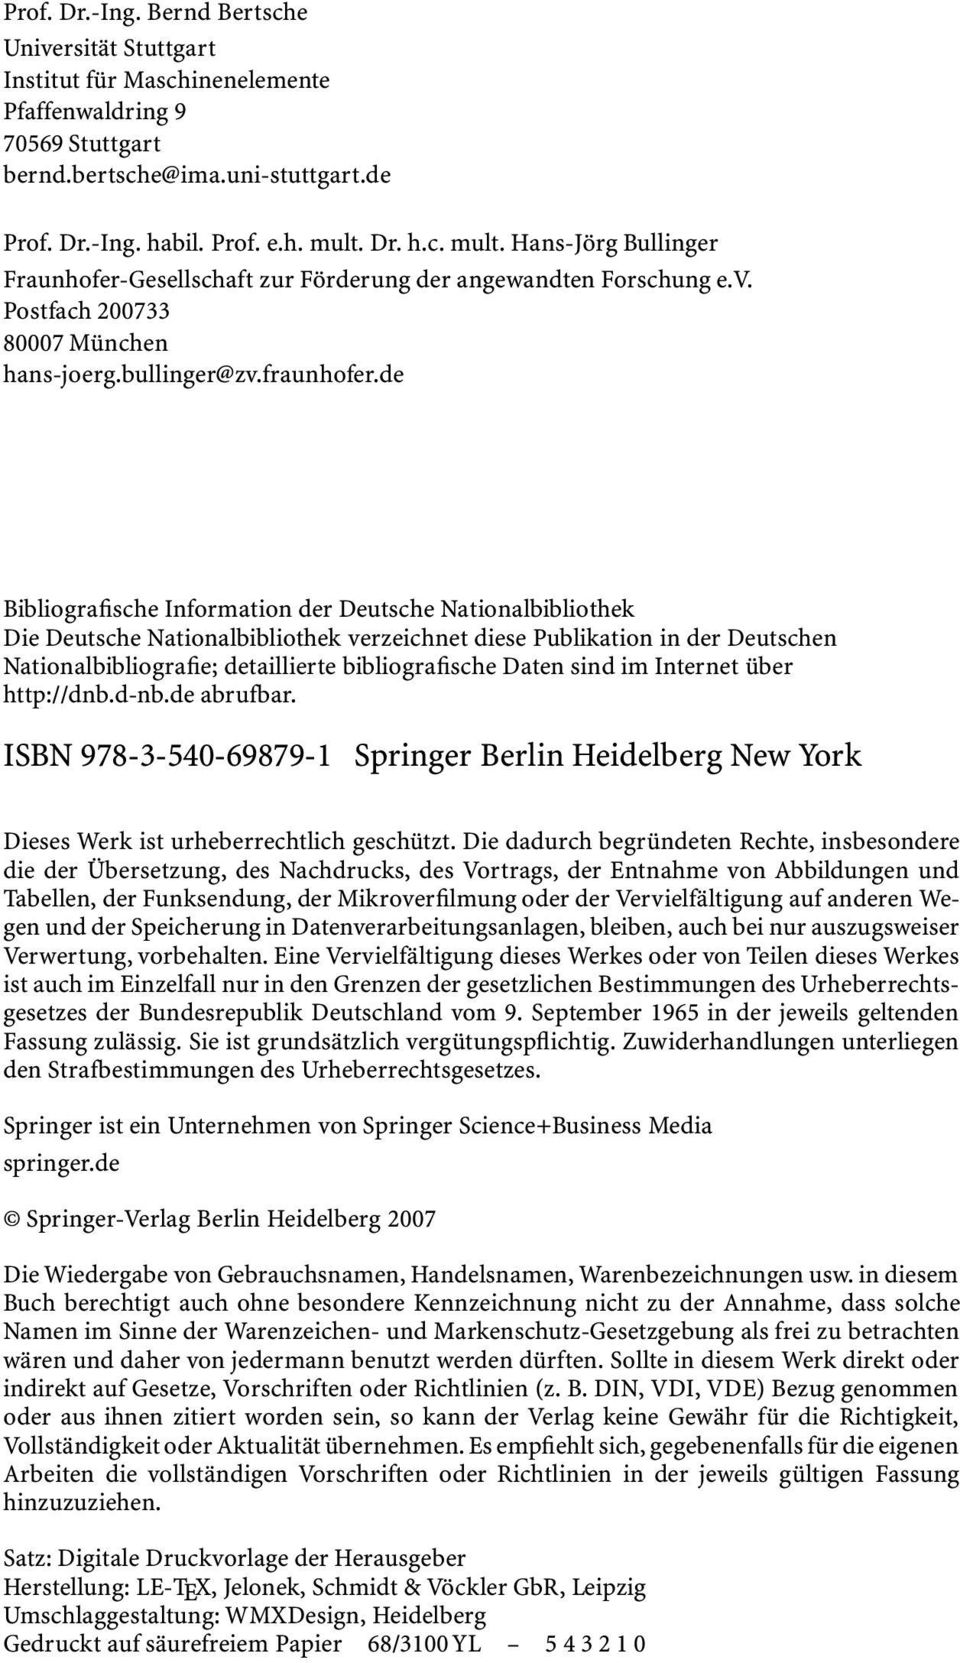 de Bibliografische Information der Deutsche Nationalbibliothek Die Deutsche Nationalbibliothek verzeichnet diese Publikation in der Deutschen Nationalbibliografie; detaillierte bibliografische Daten